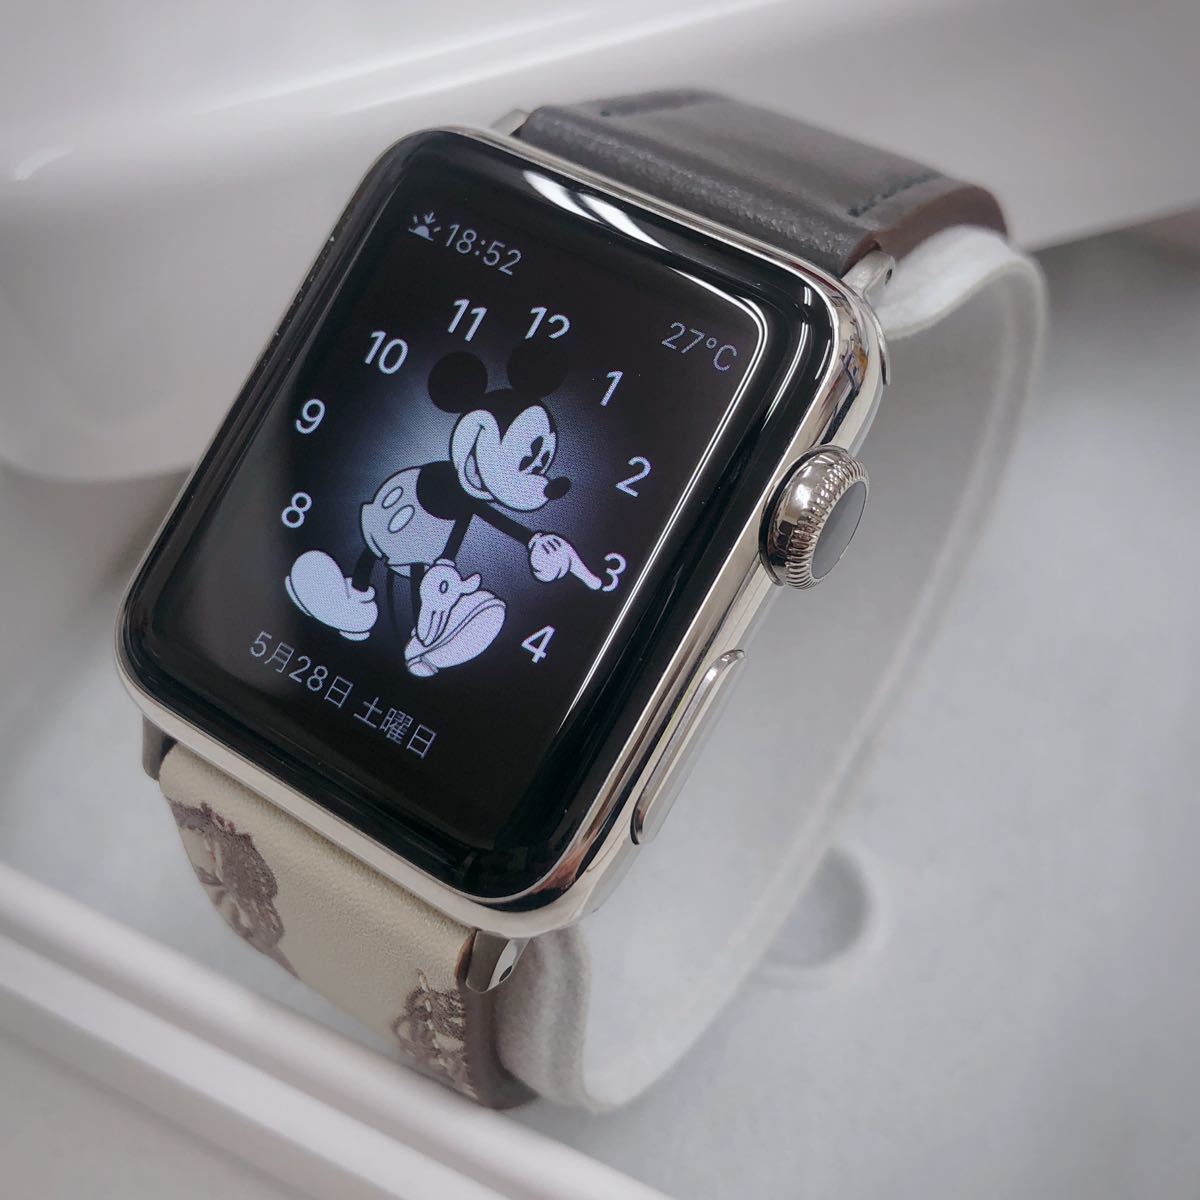 新品 apple watch ブラックステンレス 38mm 黒 | myglobaltax.com